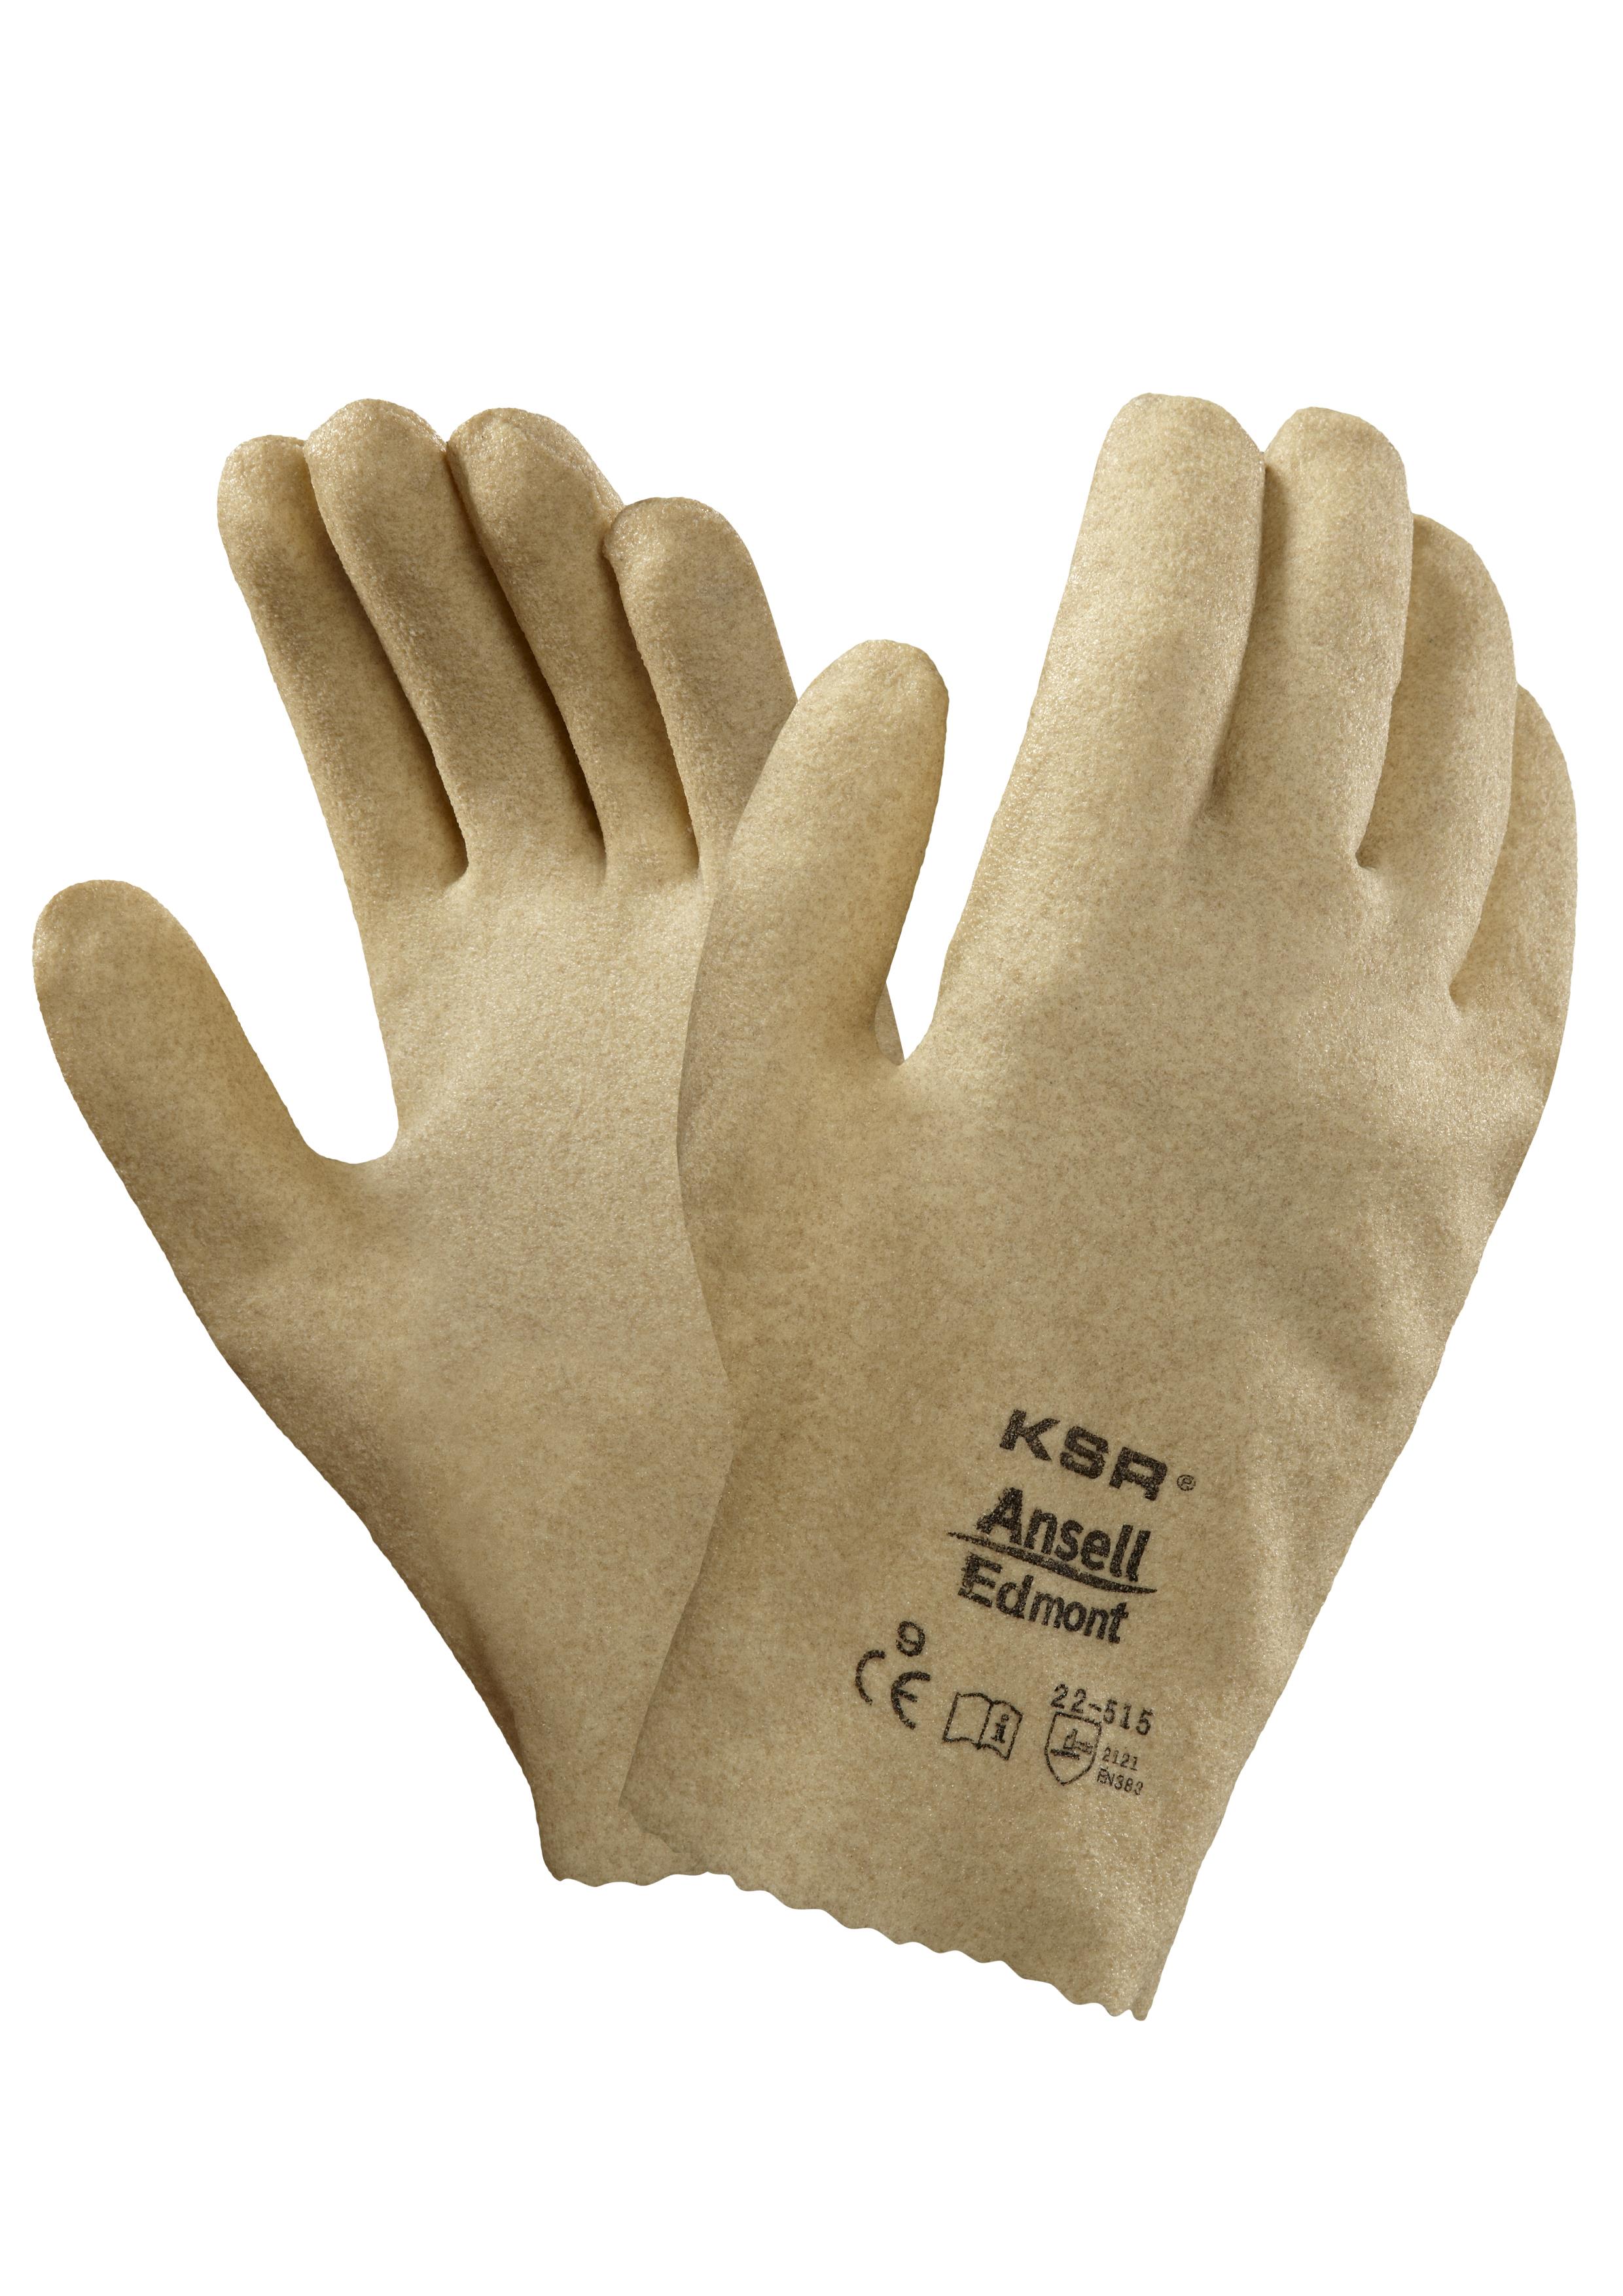 ANSELL KSR VINYL COATED GLOVE - PVC Coated Gloves